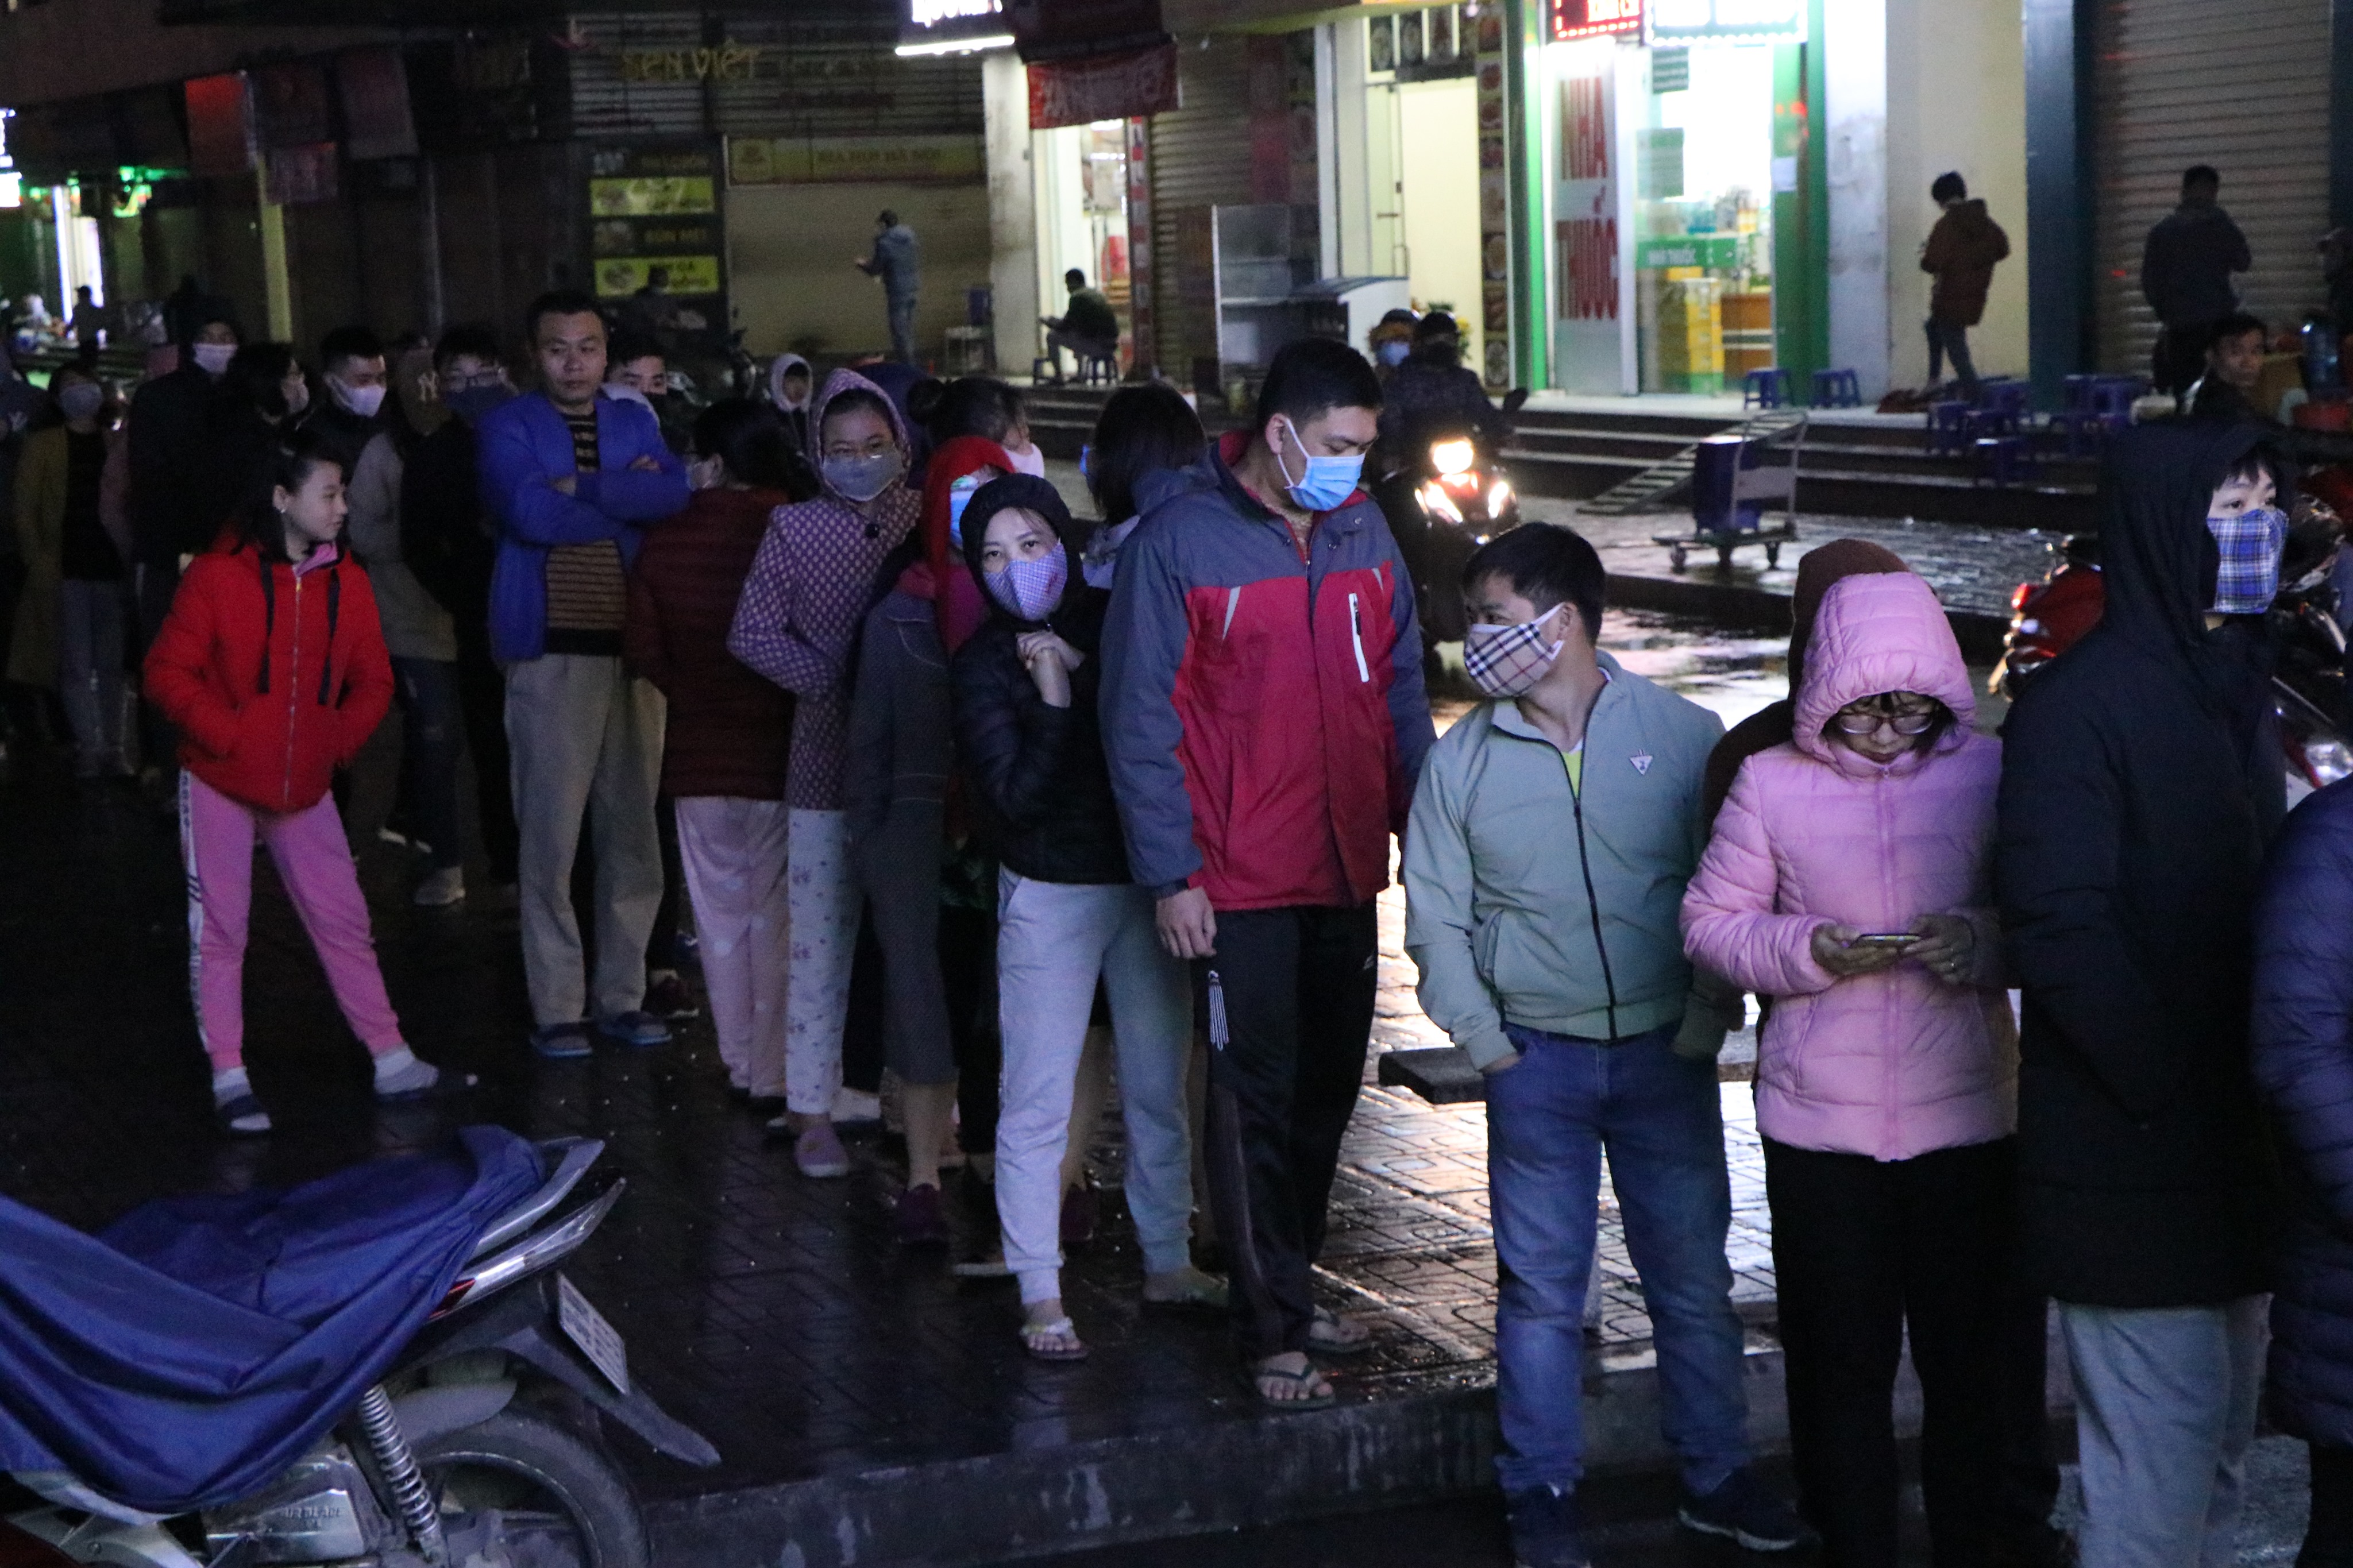 Nửa đêm, người dân ở chung cư Linh Đàm đội mưa xếp hàng mua khẩu trang